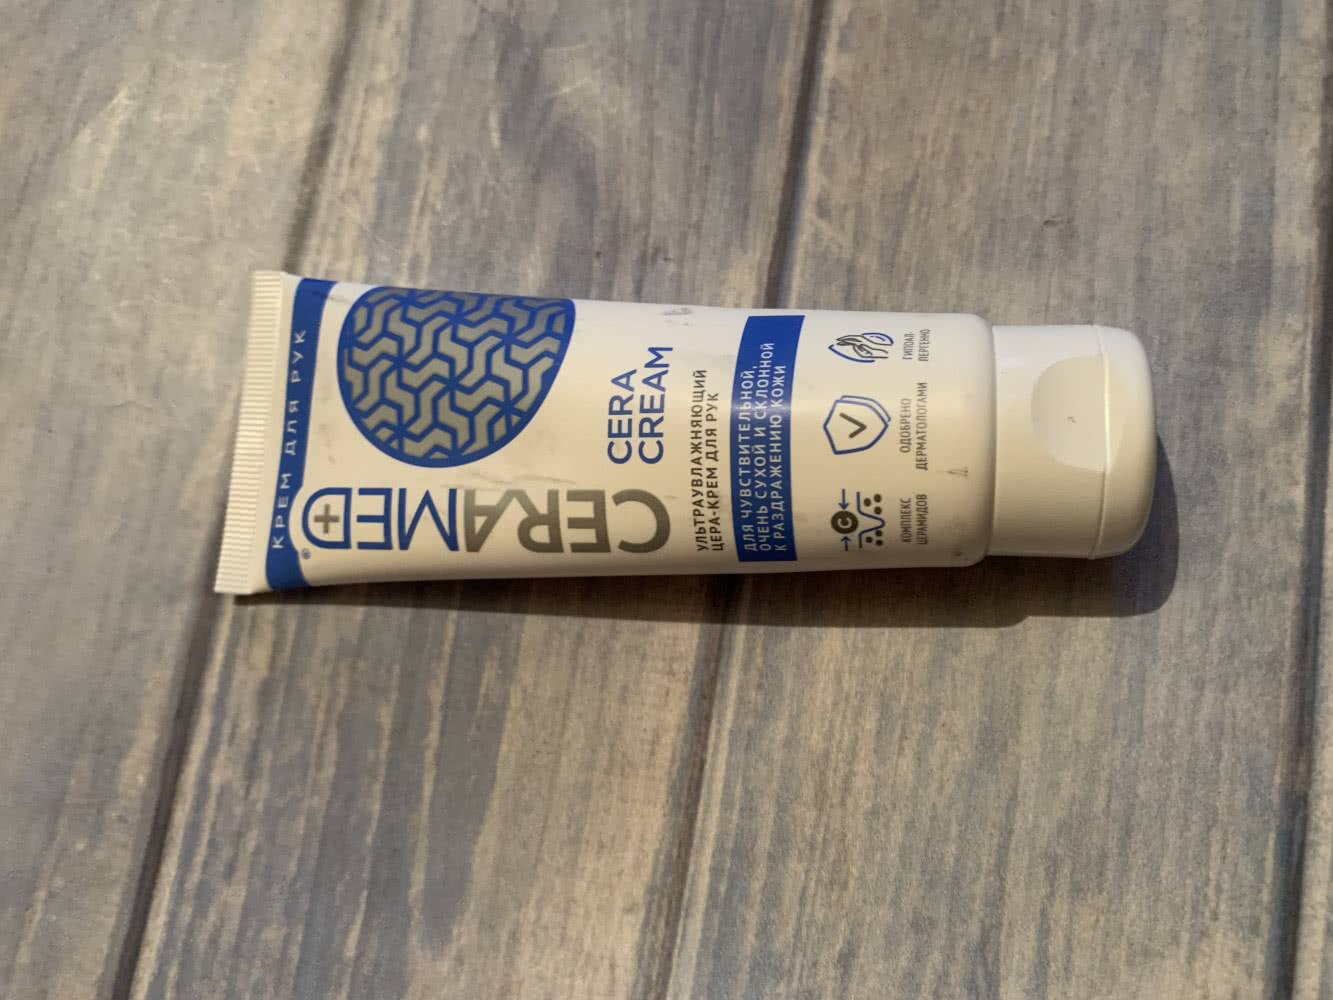 Ceramed, Cera Hand Cream, 75ml